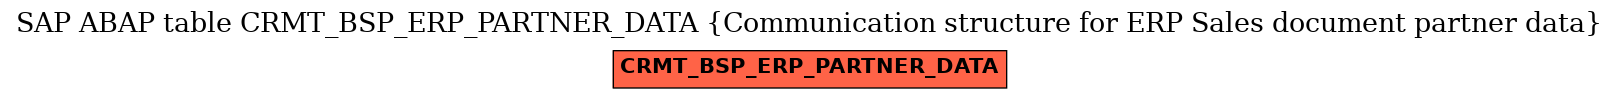 E-R Diagram for table CRMT_BSP_ERP_PARTNER_DATA (Communication structure for ERP Sales document partner data)